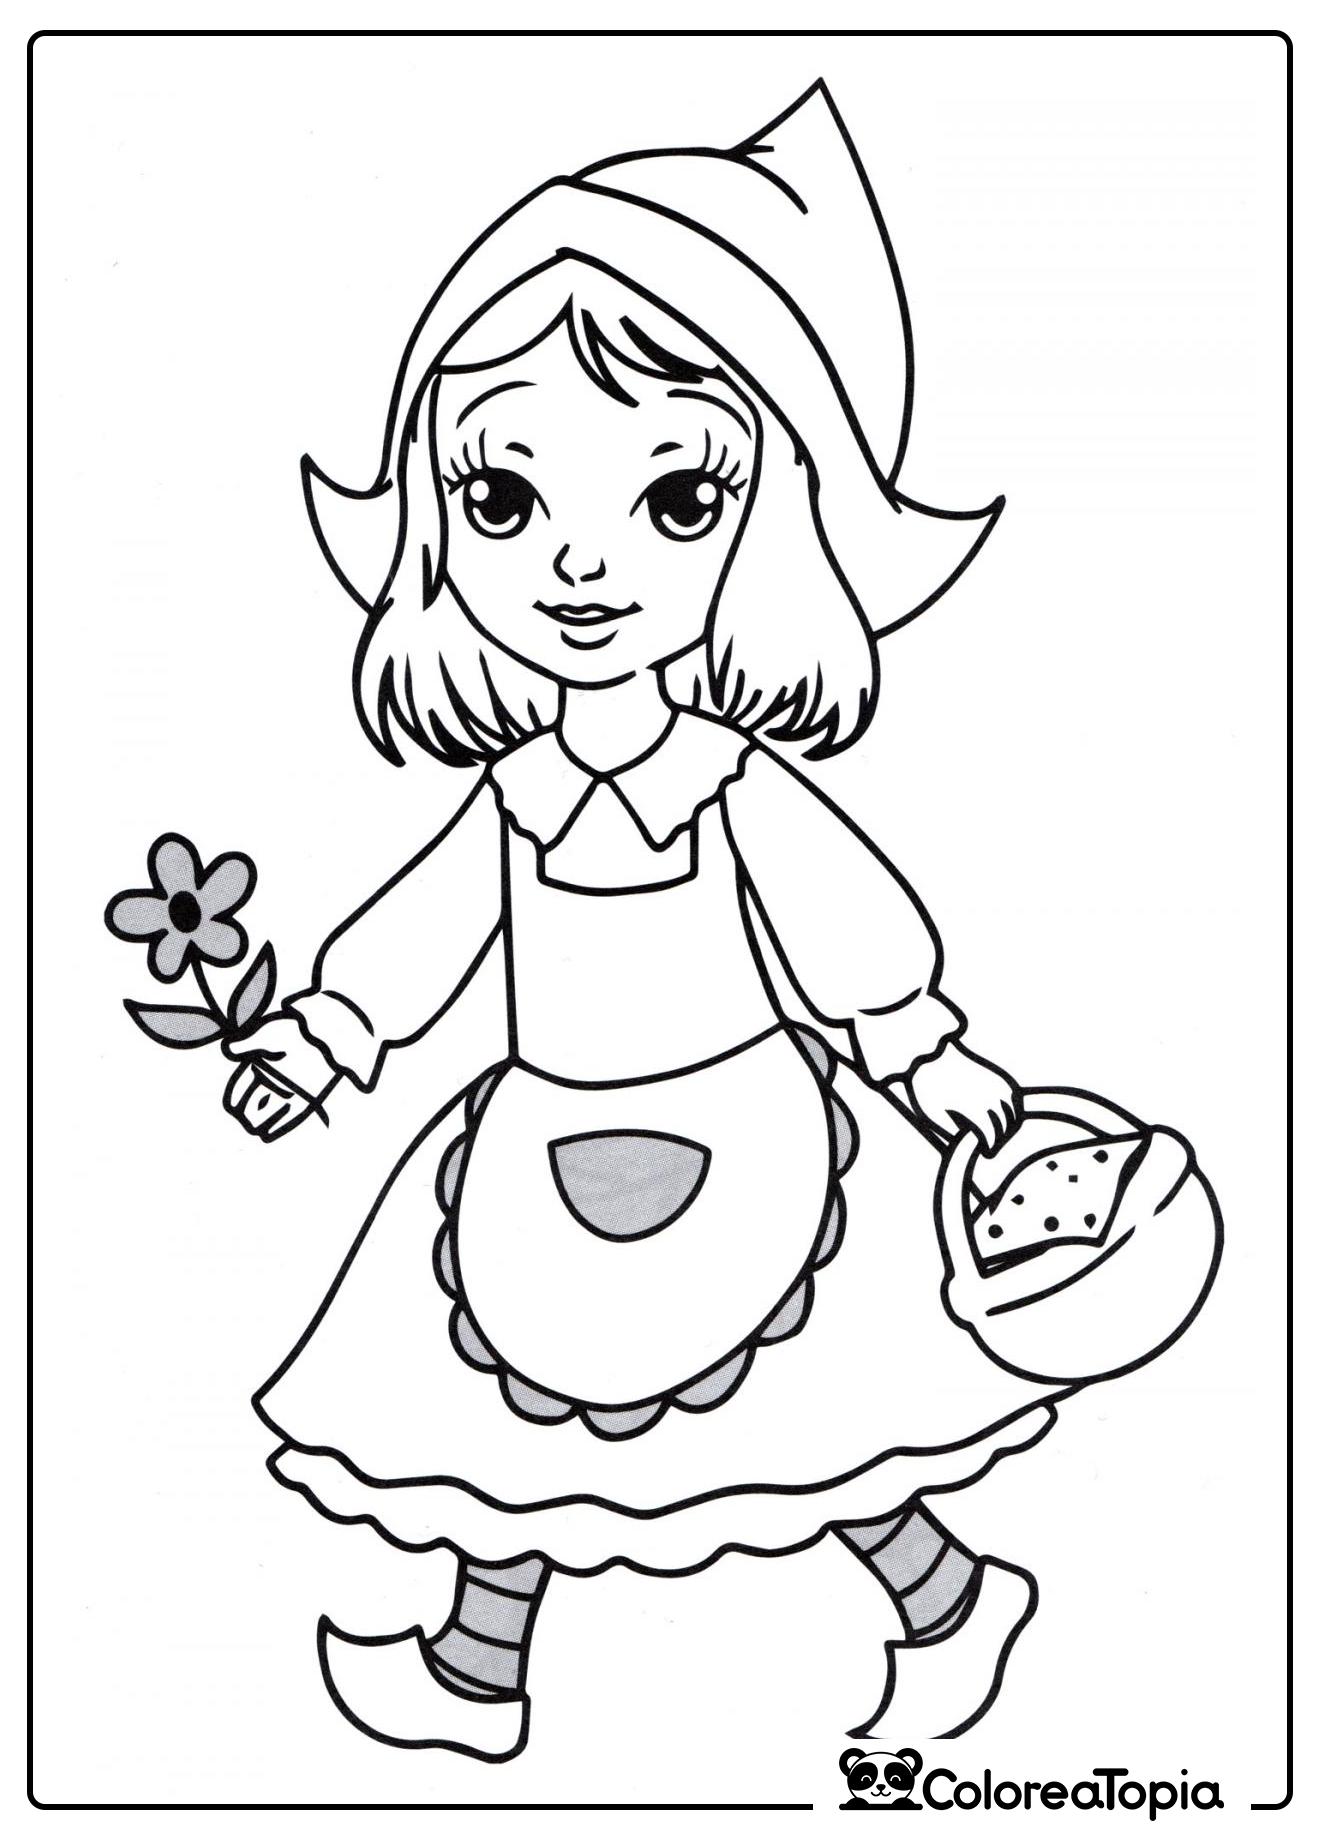 Princesa con flor - dibujo para colorear